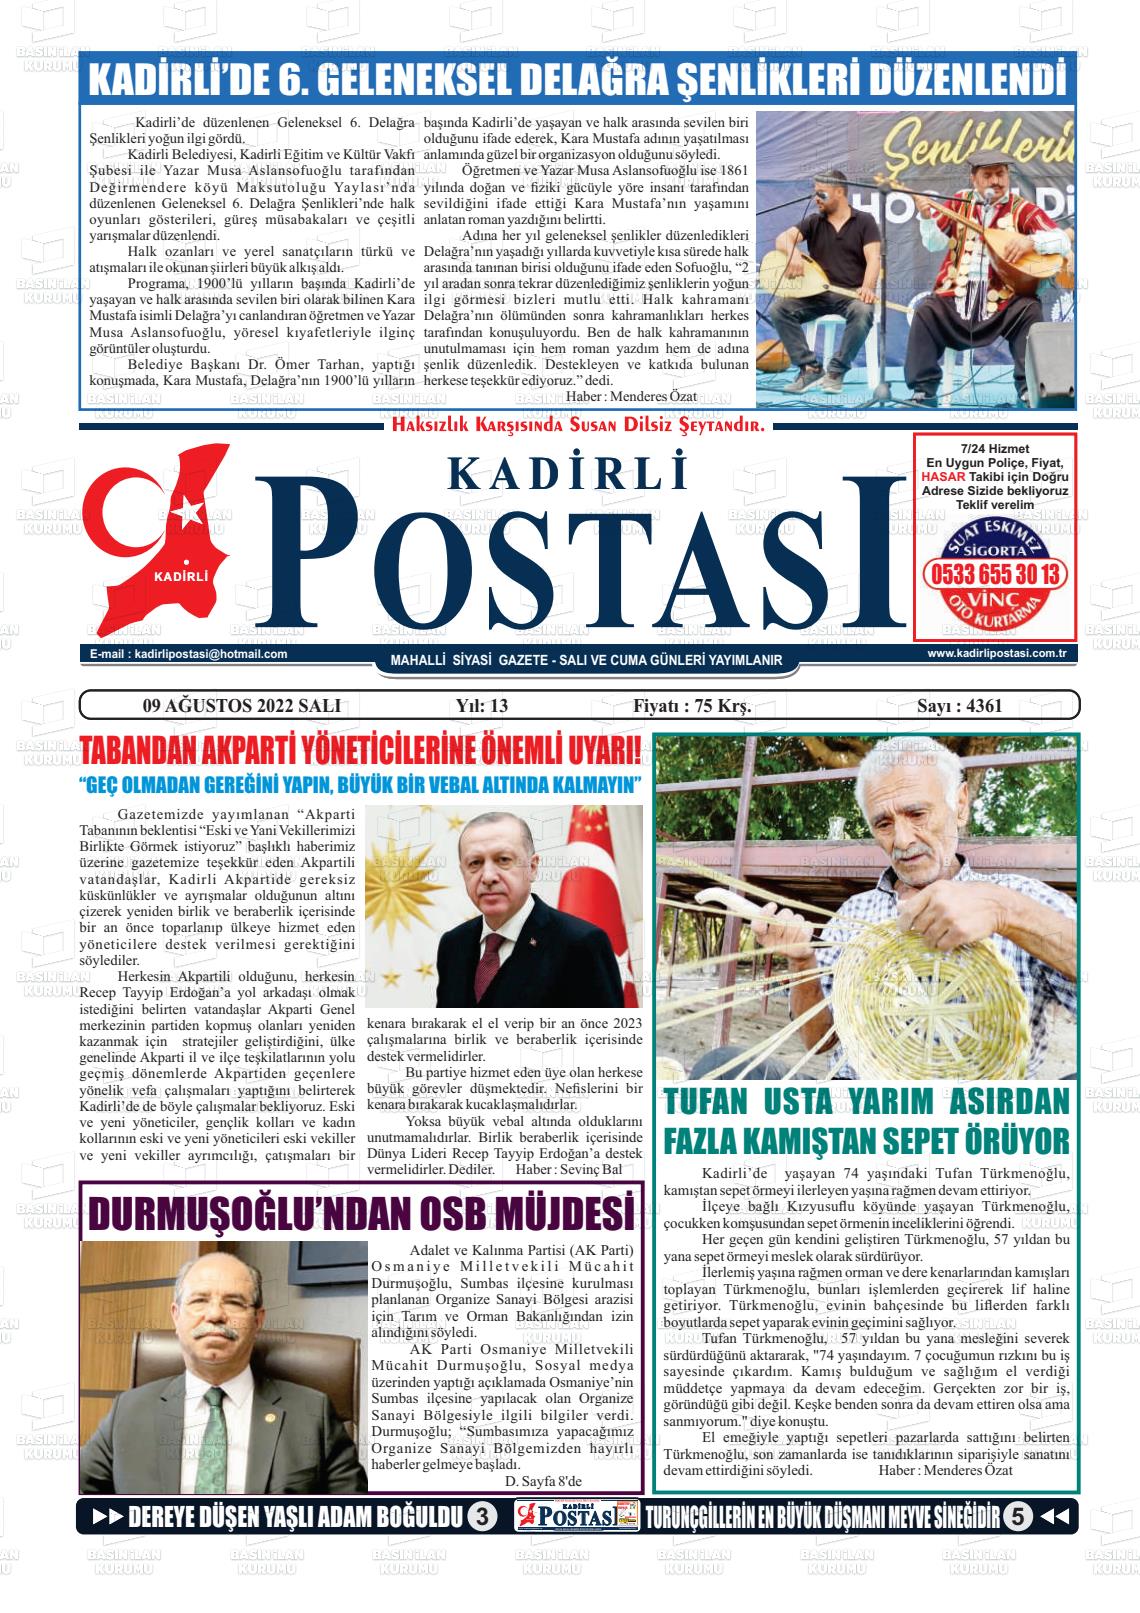 09 Ağustos 2022 Kadirli Postası Gazete Manşeti